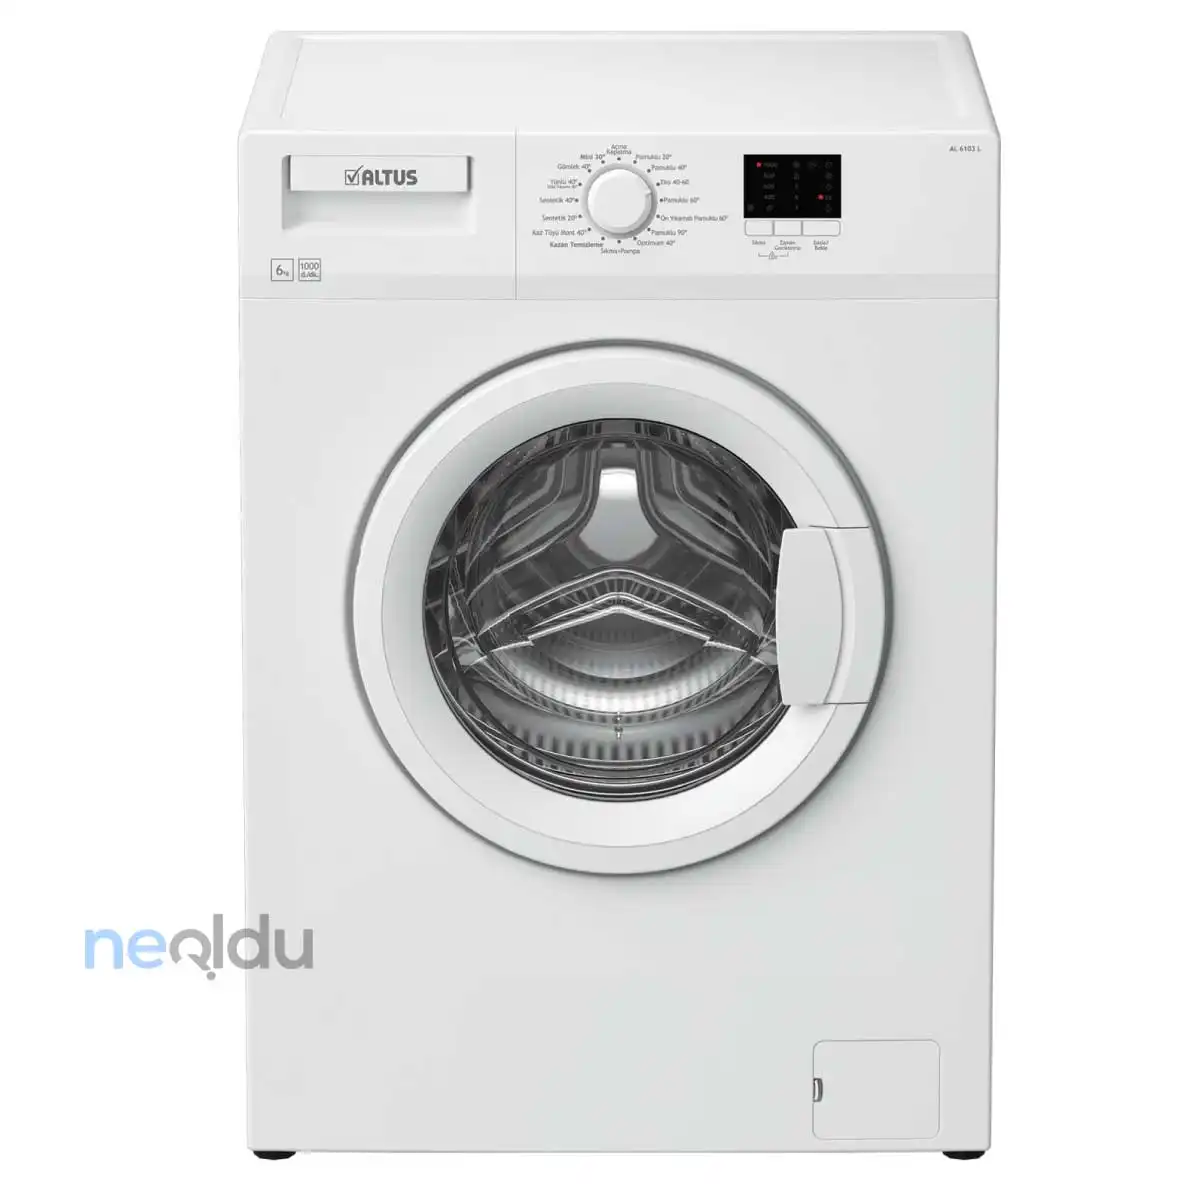 en iyi altus çamaşır makinesi